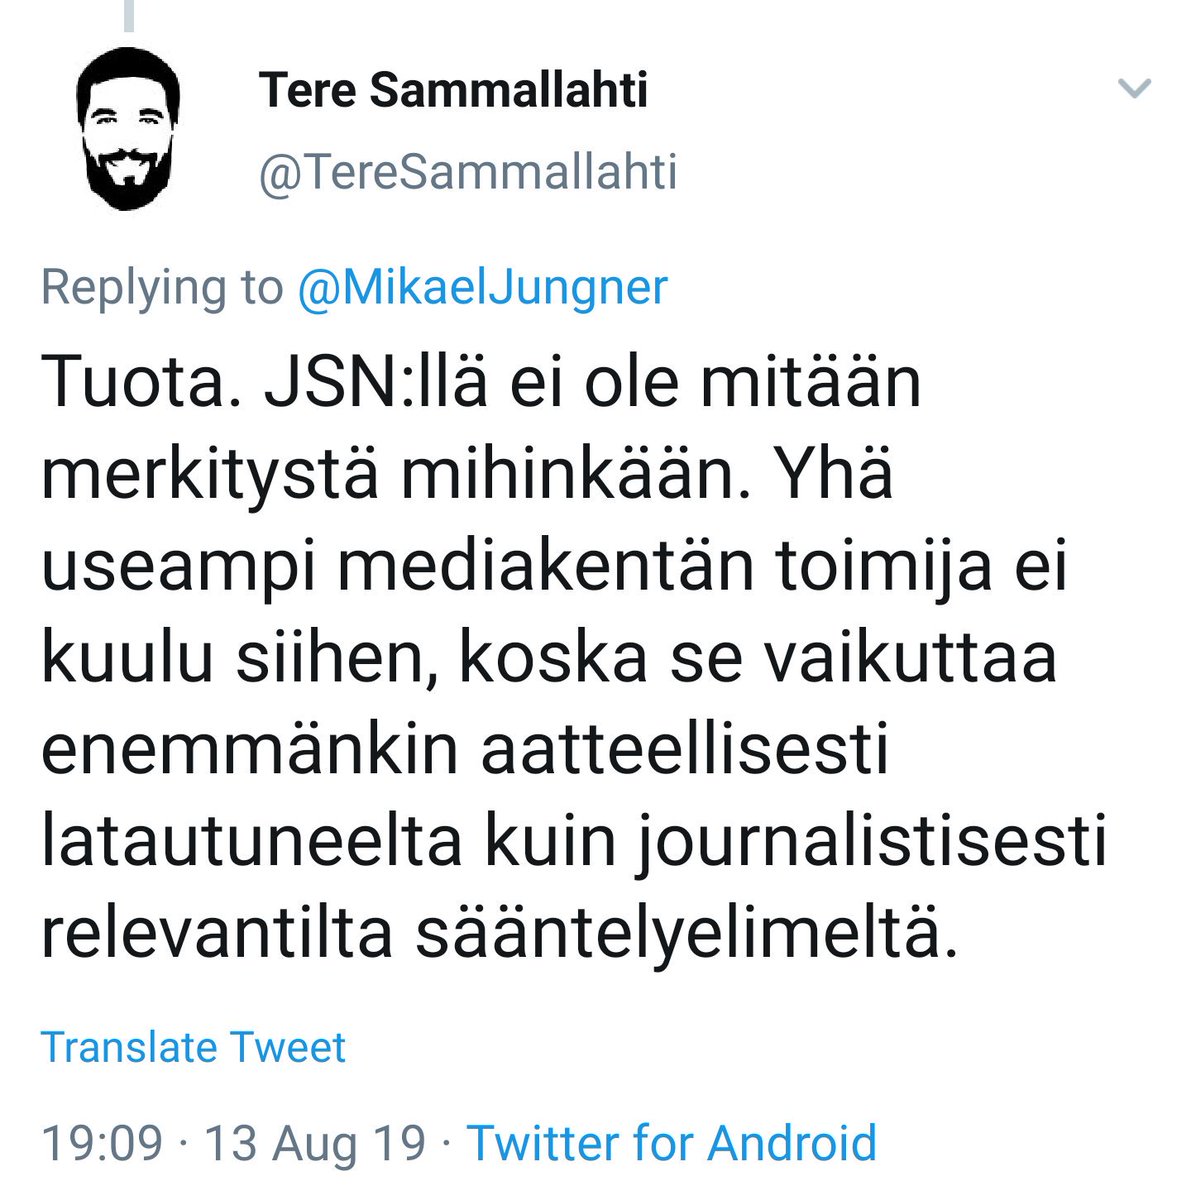 #Libera'n uusi sisältöjohtaja #TereSammallahti: 
'#JSN:llä ei ole mitään merkitystä mihinkään'.

#JulkisenSananNeuvosto #journalismi #JournalistinOhjeet